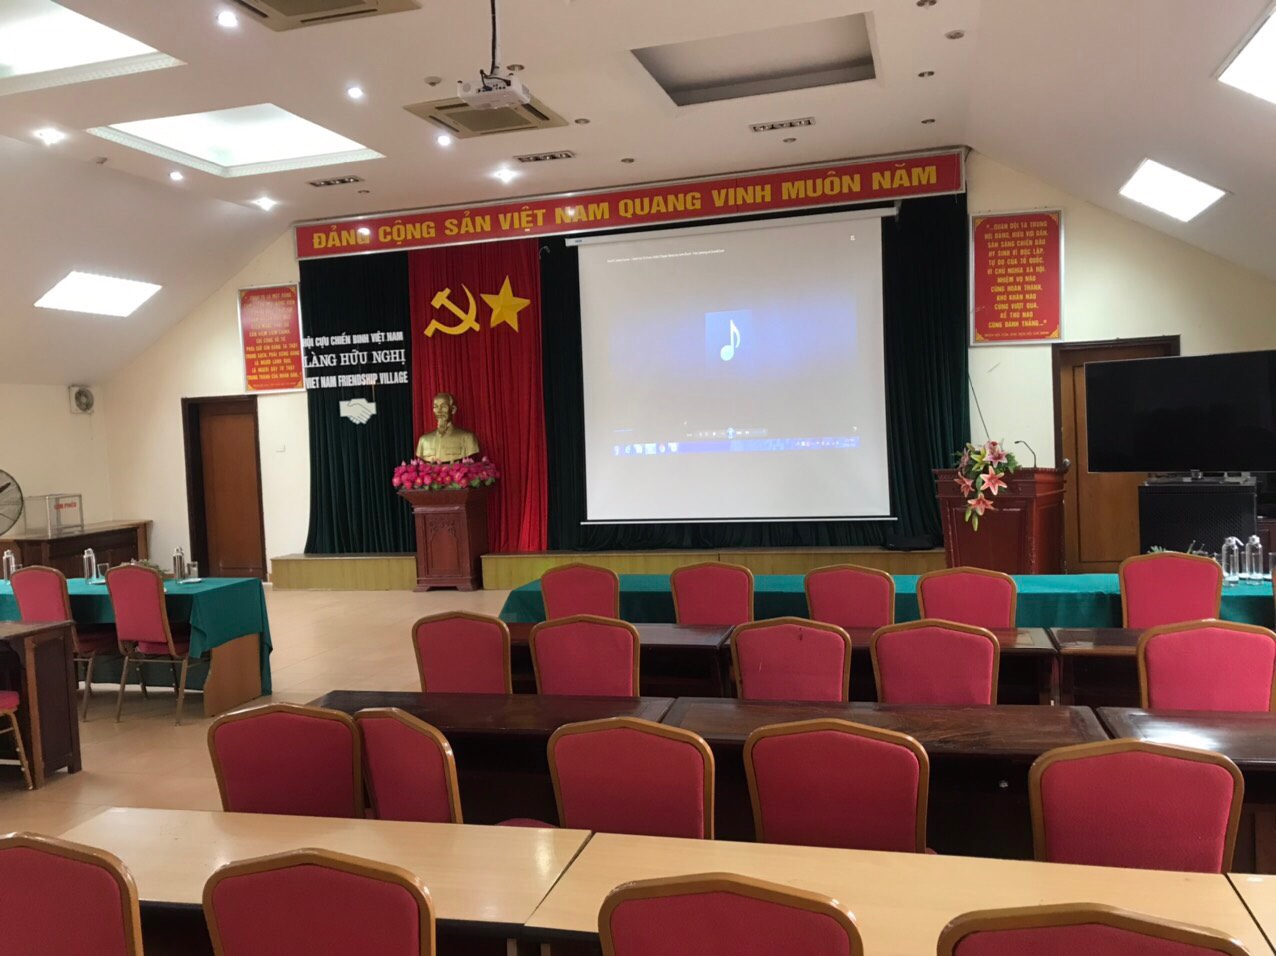 Sửa chữa máy chiếu uy tín chuyên nghiệp nhanh tại Hà Nội